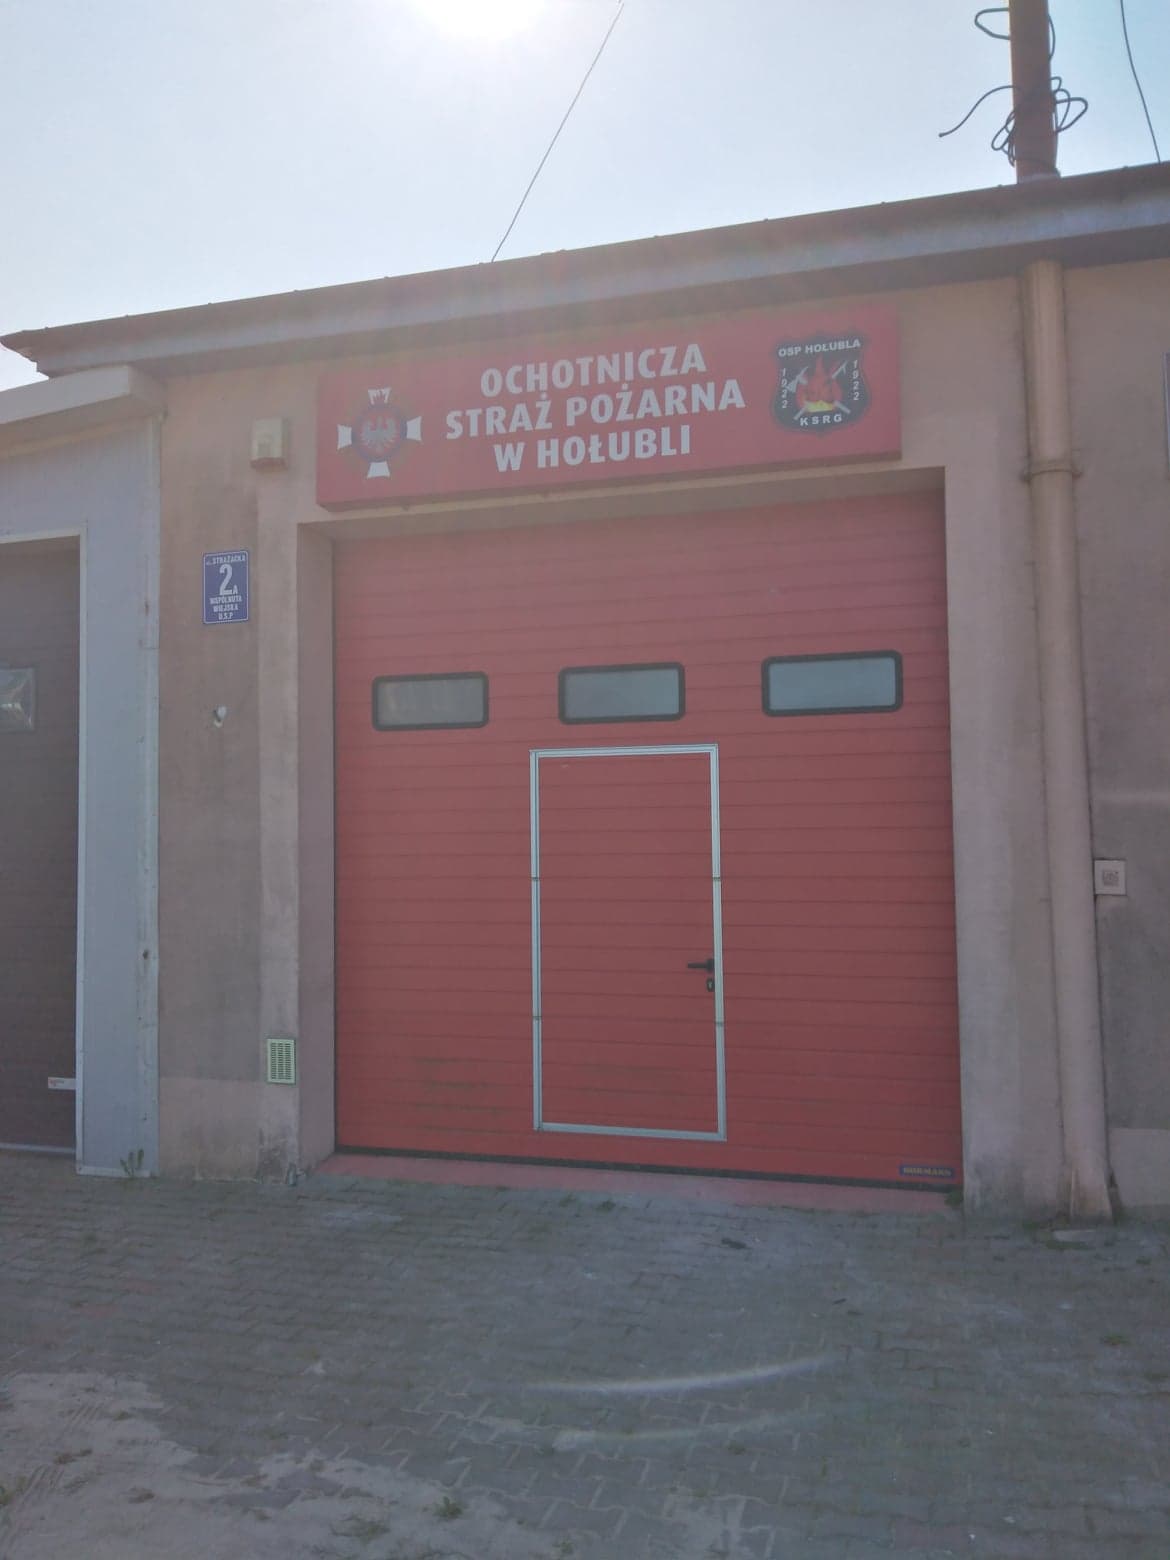 Zdjęcie przedstawia strażnicę OSH Hołubla od zewnątrz. Widoczne są czerwone drzwi oraz duży szyld z napisem Ochotnicza Straż Pożarna w Hołubli